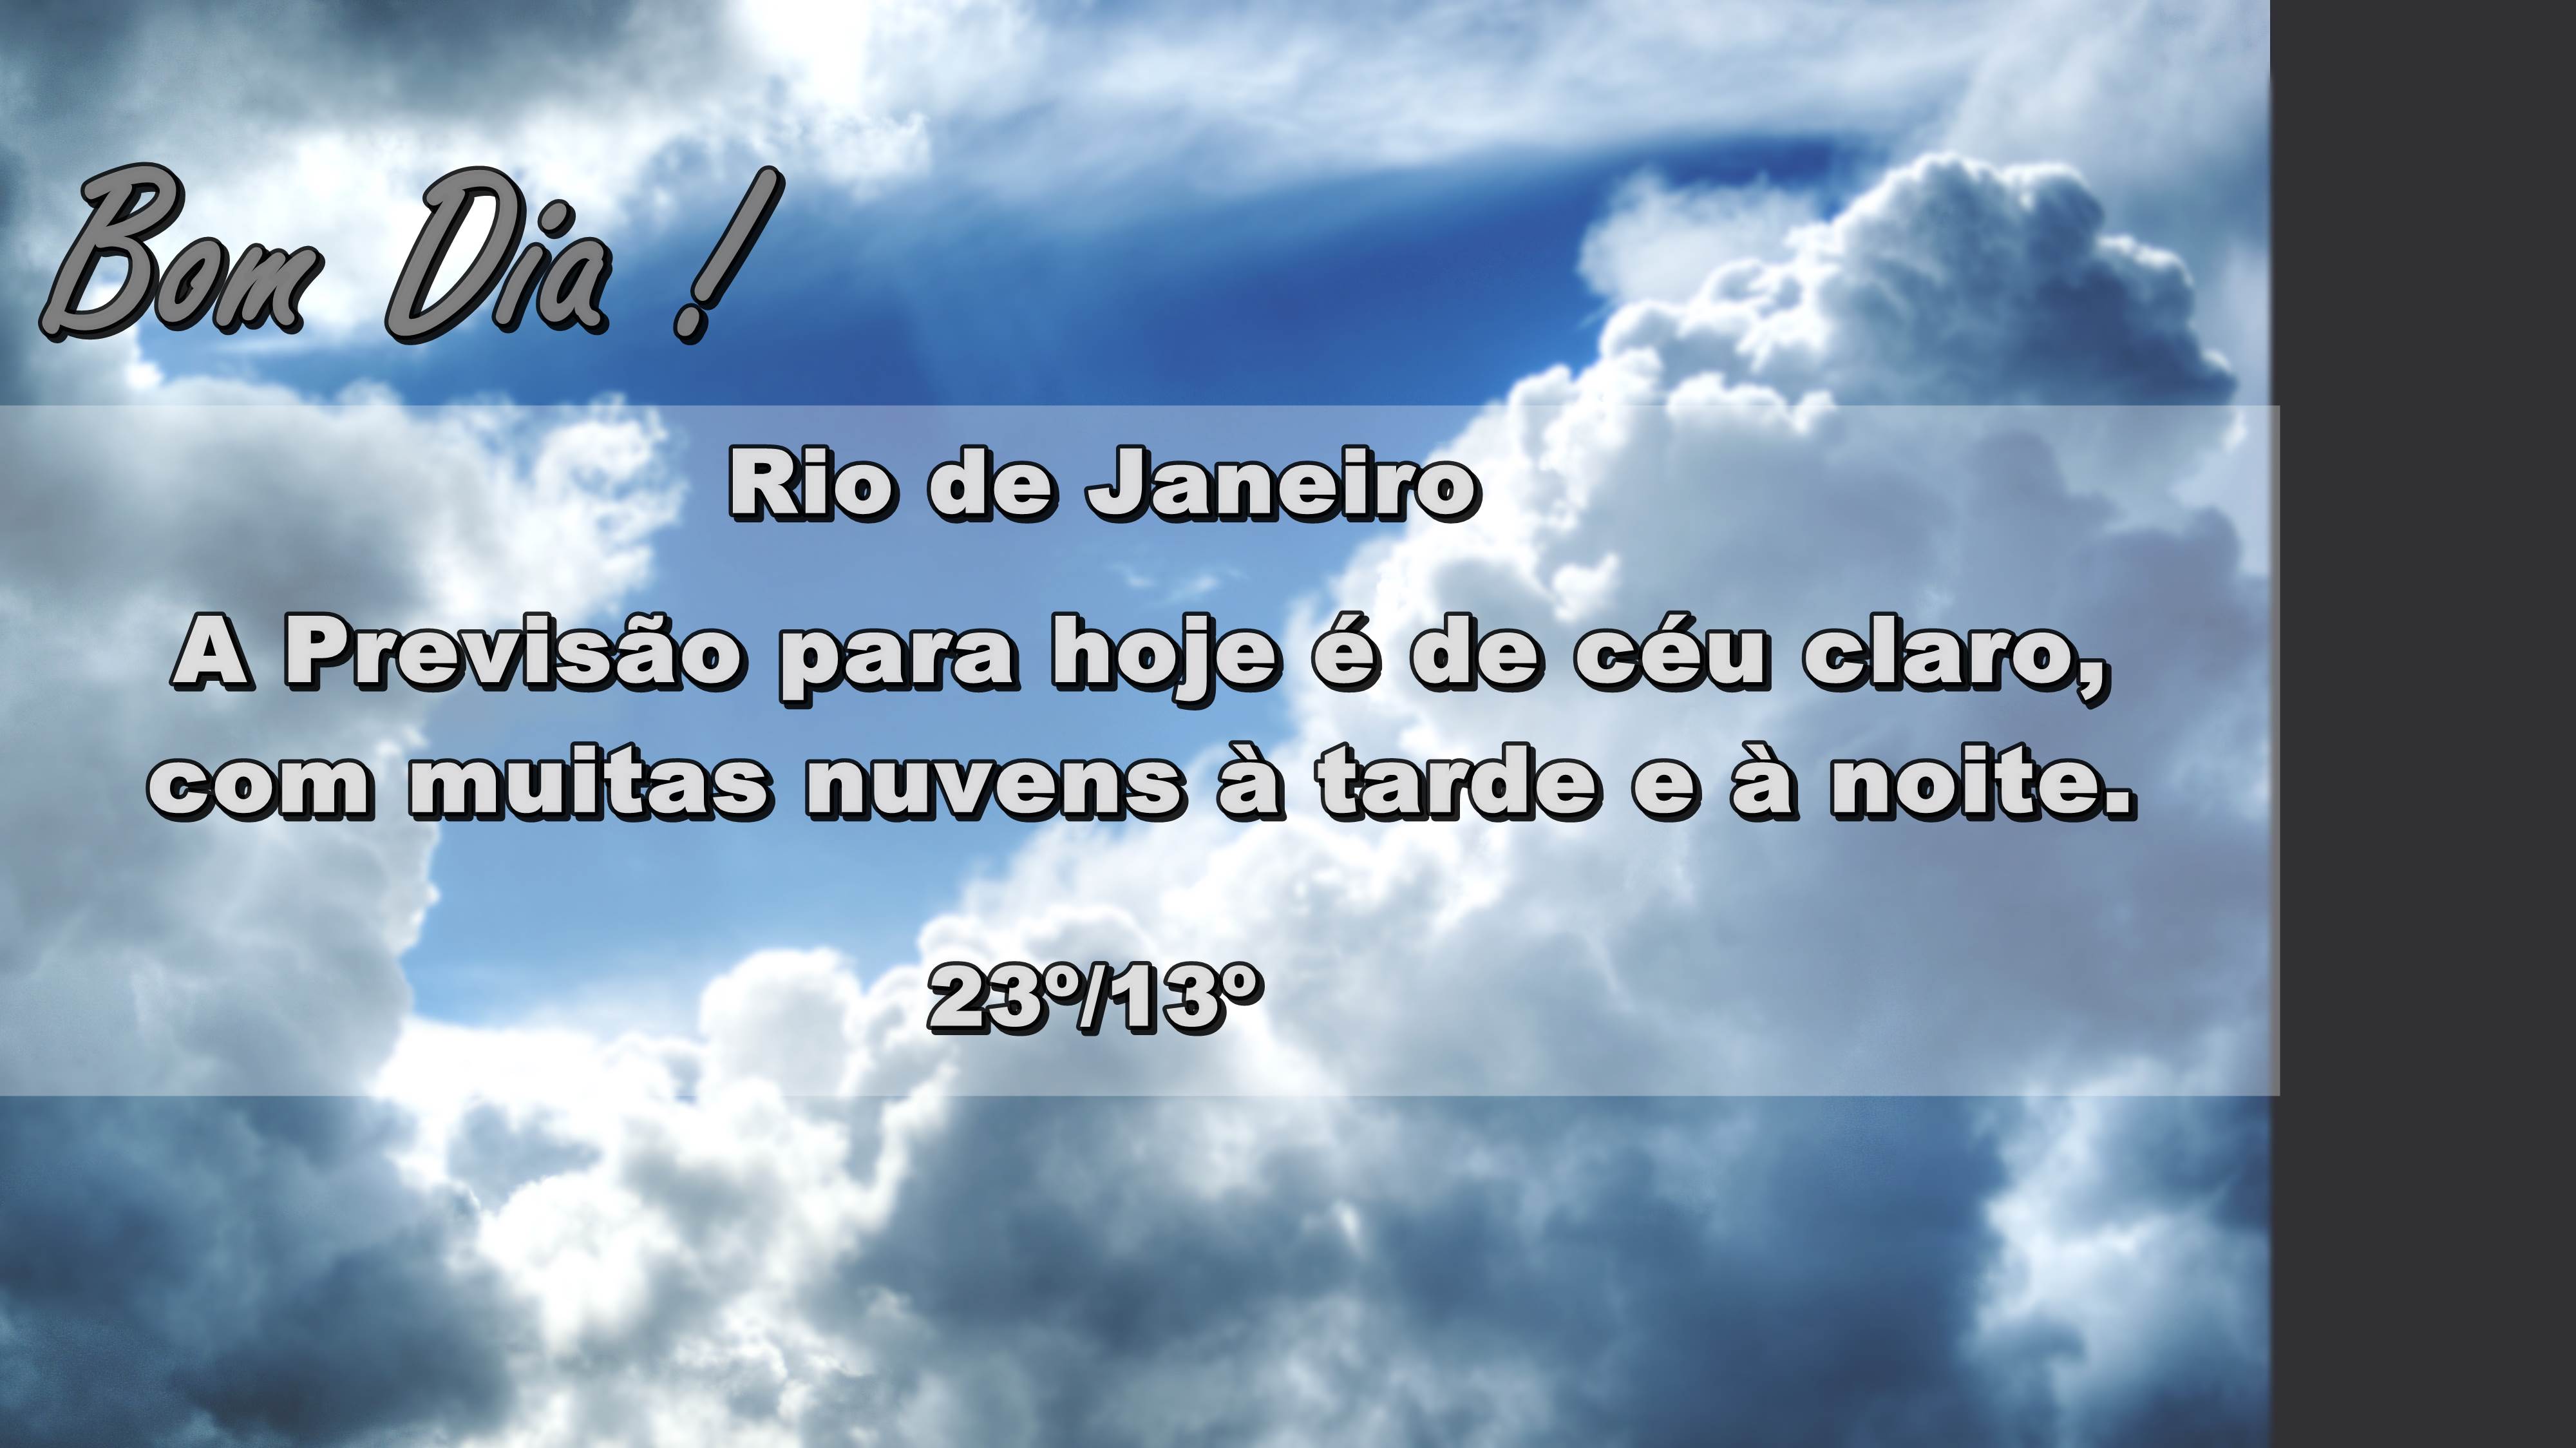 SITE MODELO - BOM DIA NUBLADO 090616 | Rádio Rio de Janeiro